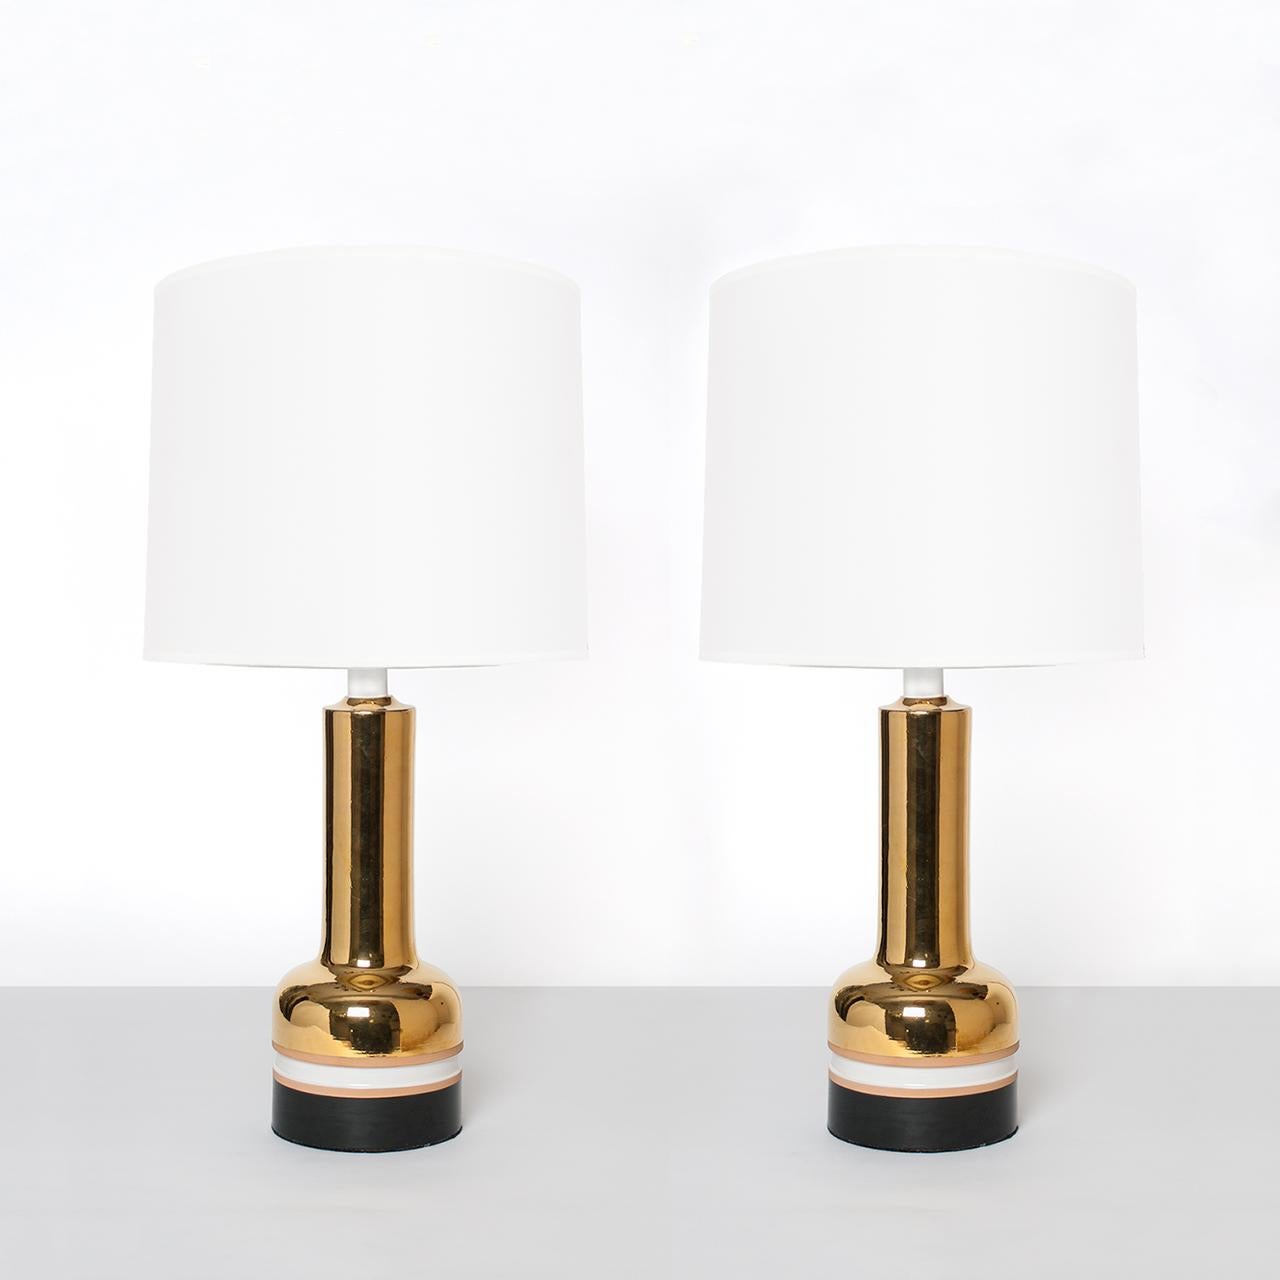 Ein Paar skandinavisch-moderne Keramik-Tischlampen mit brillanter Goldglasur, hergestellt in Italien für Bergboms aus Schweden. Die Lampen sind mit unglasierten und glasierten Streifen in Schwarz und Weiß versehen. Neu verdrahtet für die USA mit